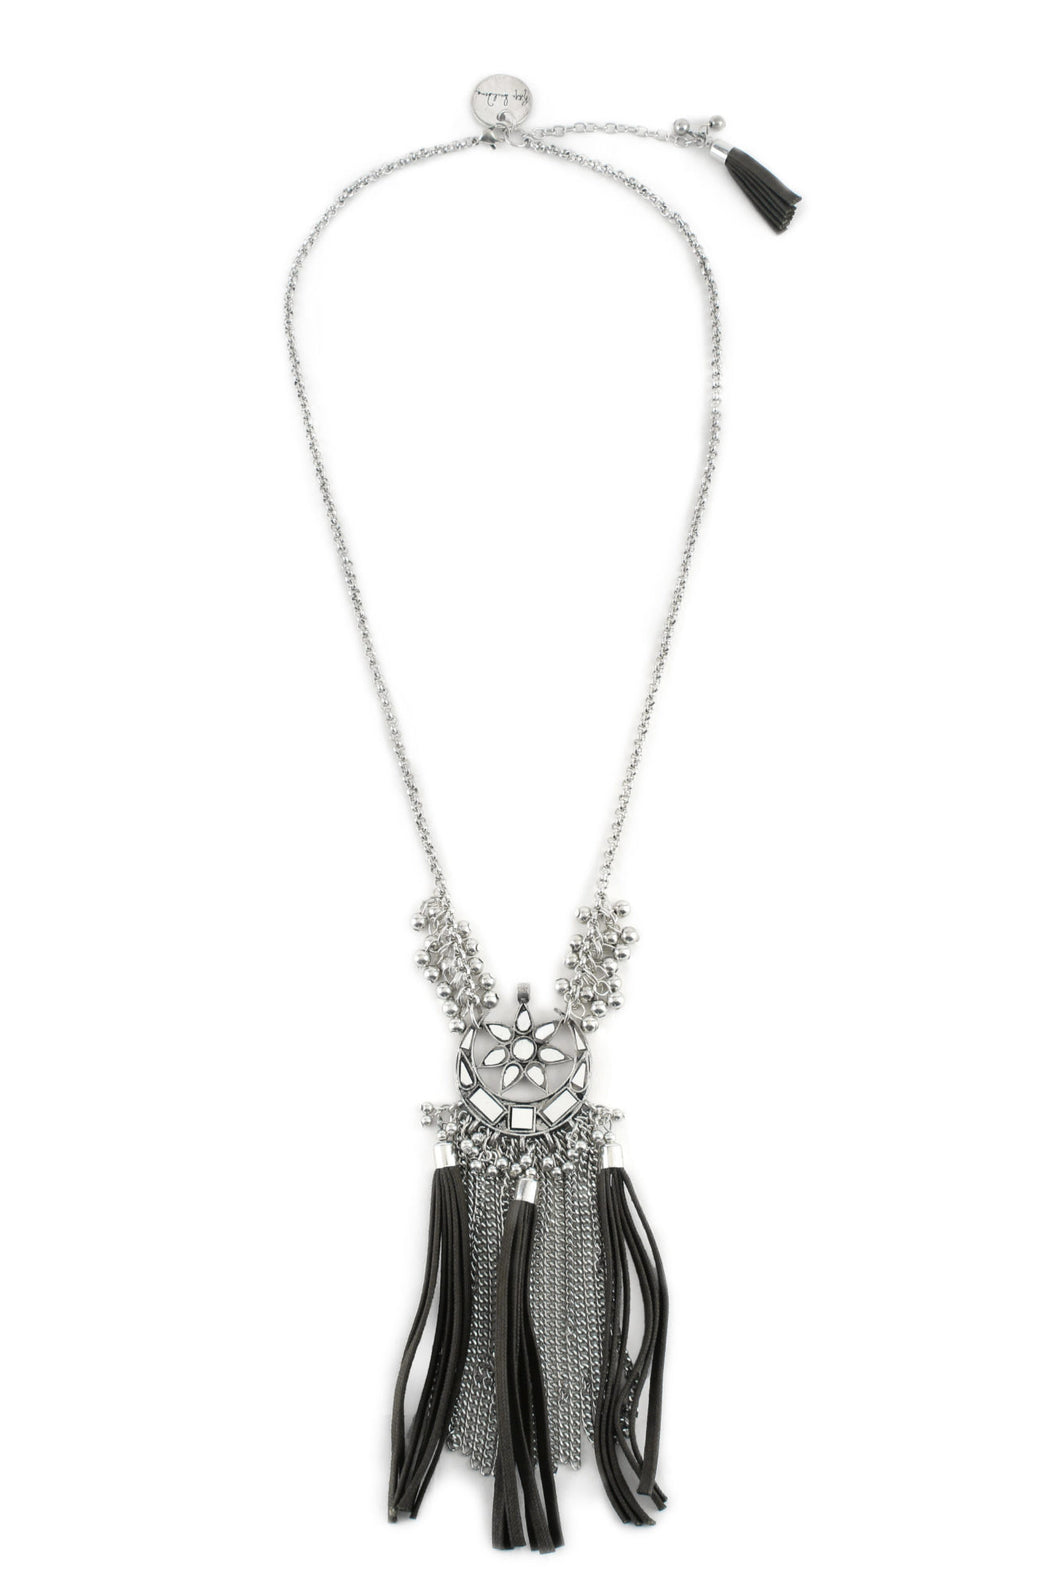 Mirror & Tassel Black Necklace